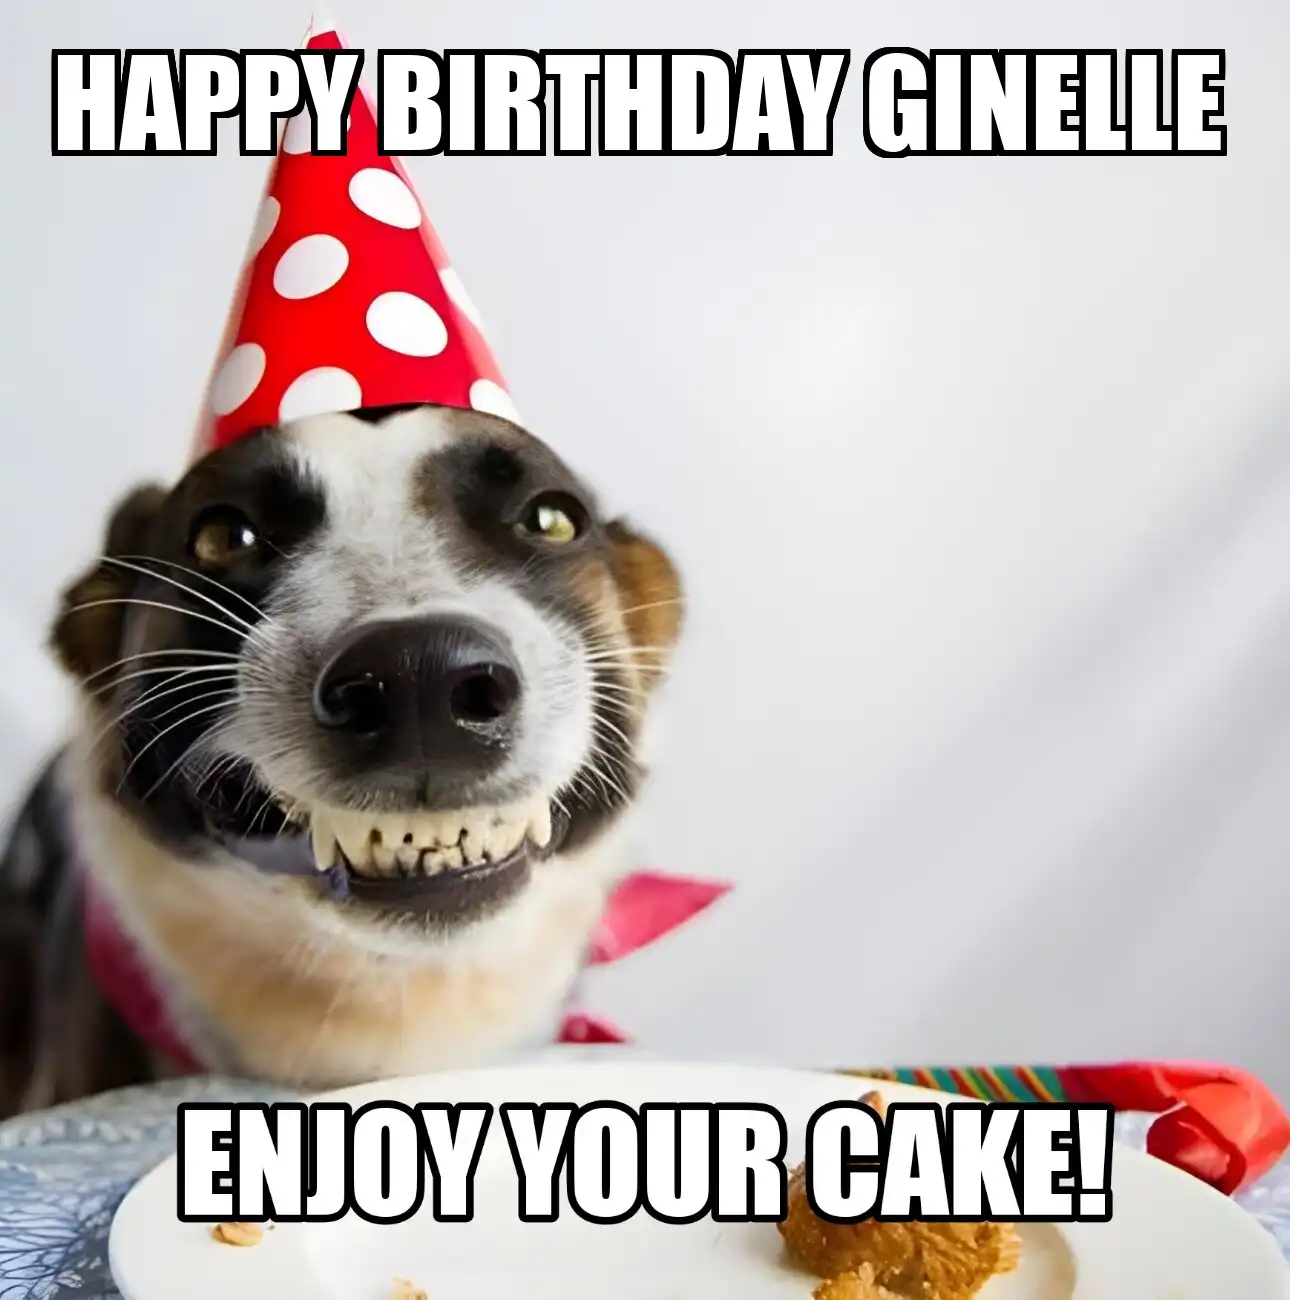 Happy Birthday Ginelle Enjoy Your Cake Dog Meme